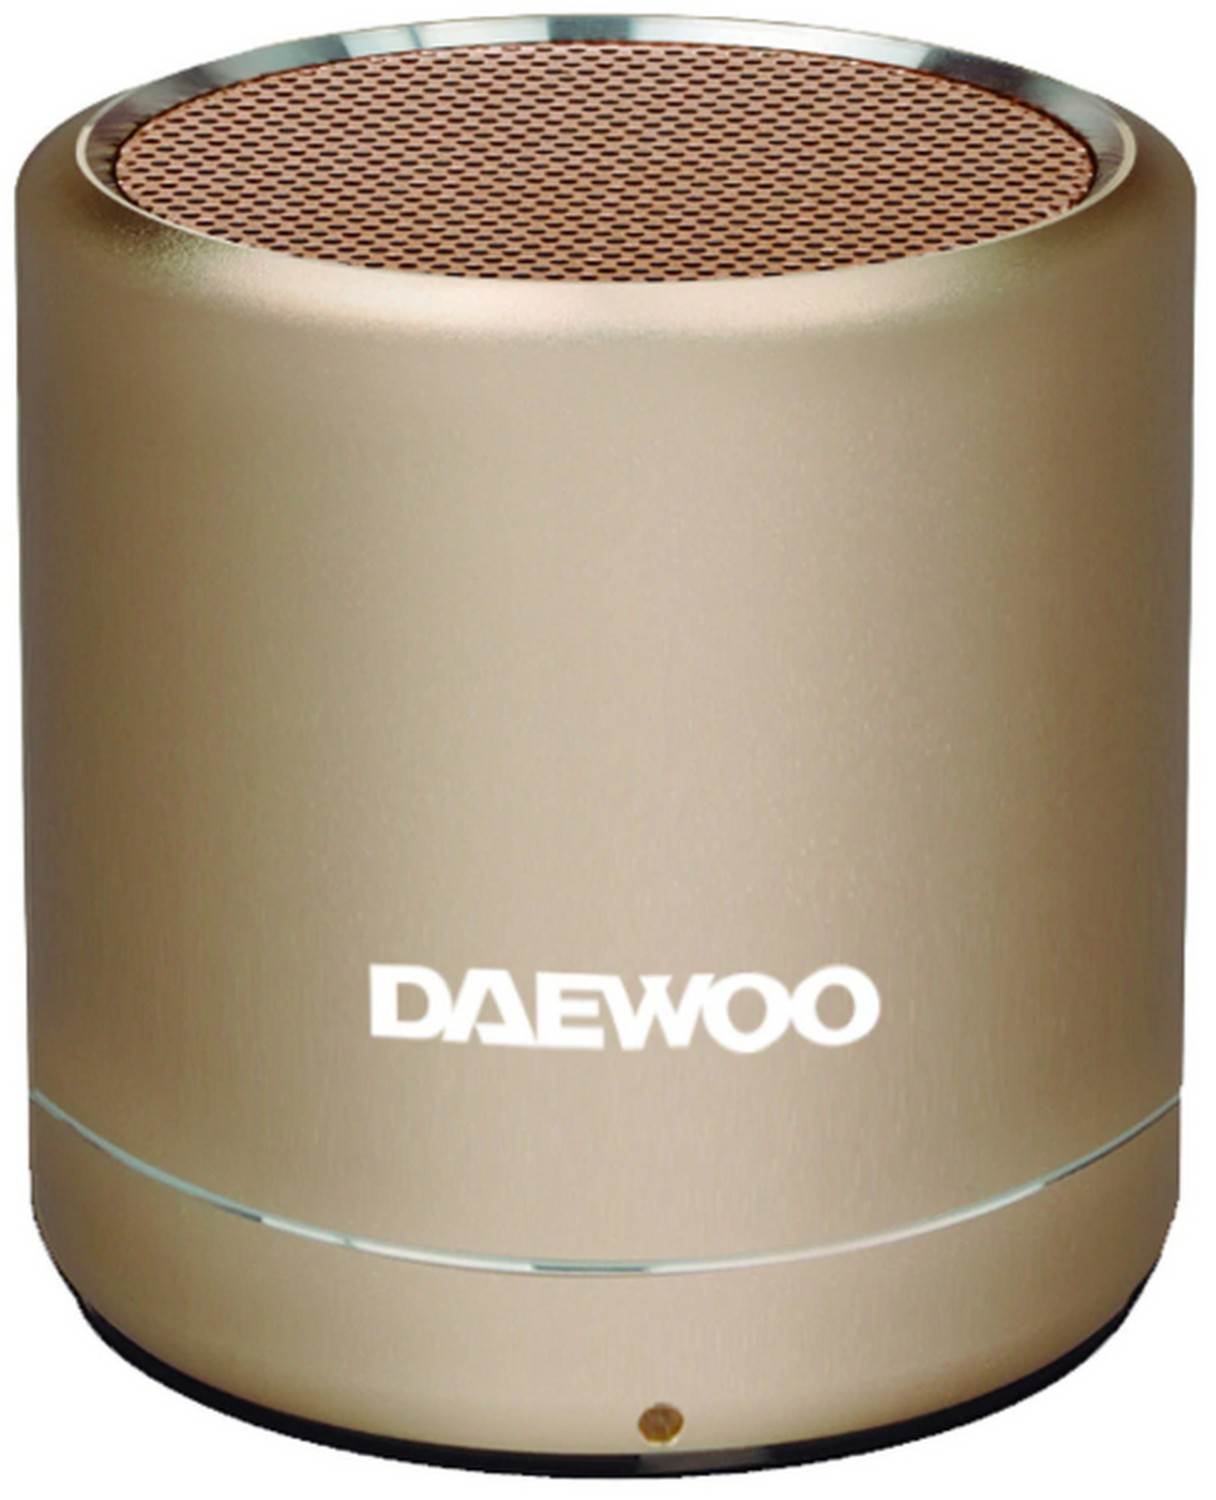 Altavoz Bluetooth Daewoo dbt212 5w oro dorado dbt212g manos libres radio fm mini potente portatil tecnología true wireless acabado aluminio batería 3h